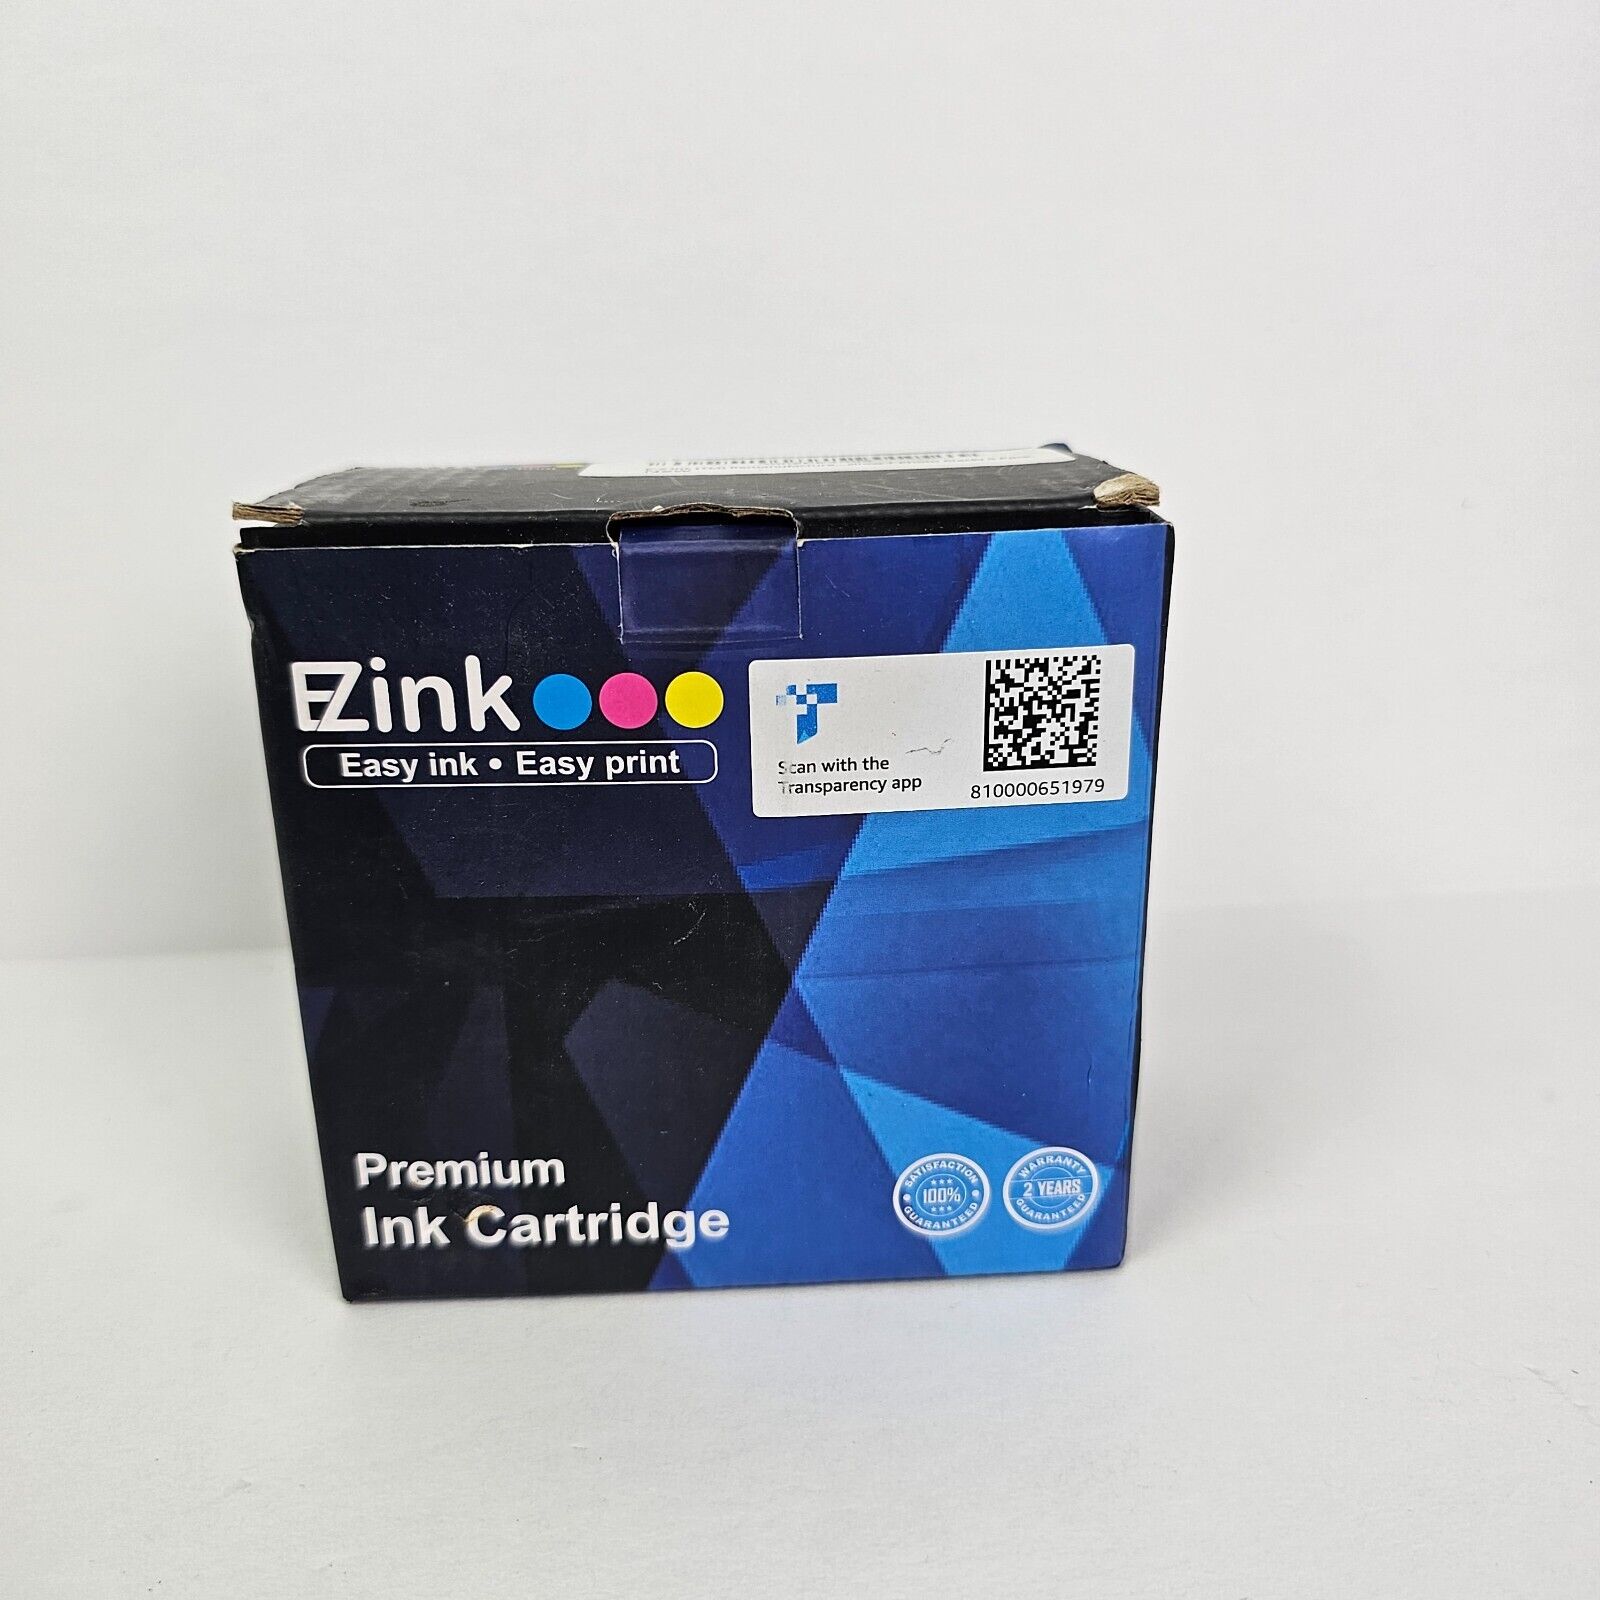 New EZink Easy ink Easy Print Premium Ink Cartridge Multi-pack EX Feb 01 2023